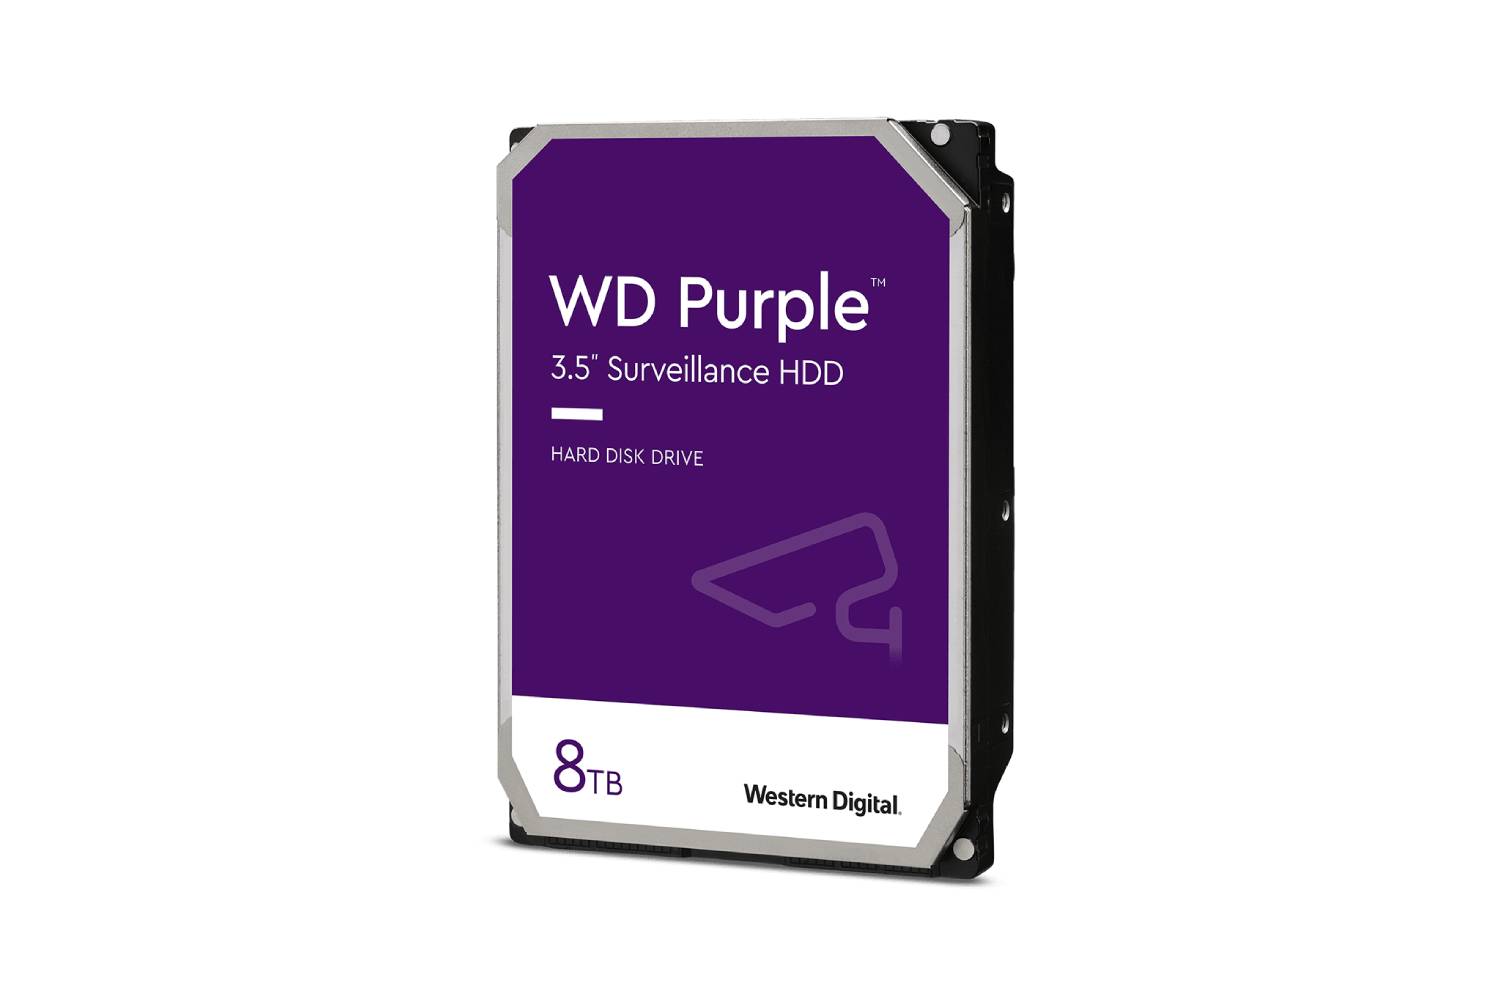 WD Purple 8TB Surveillance HDD (WD82PURZ)